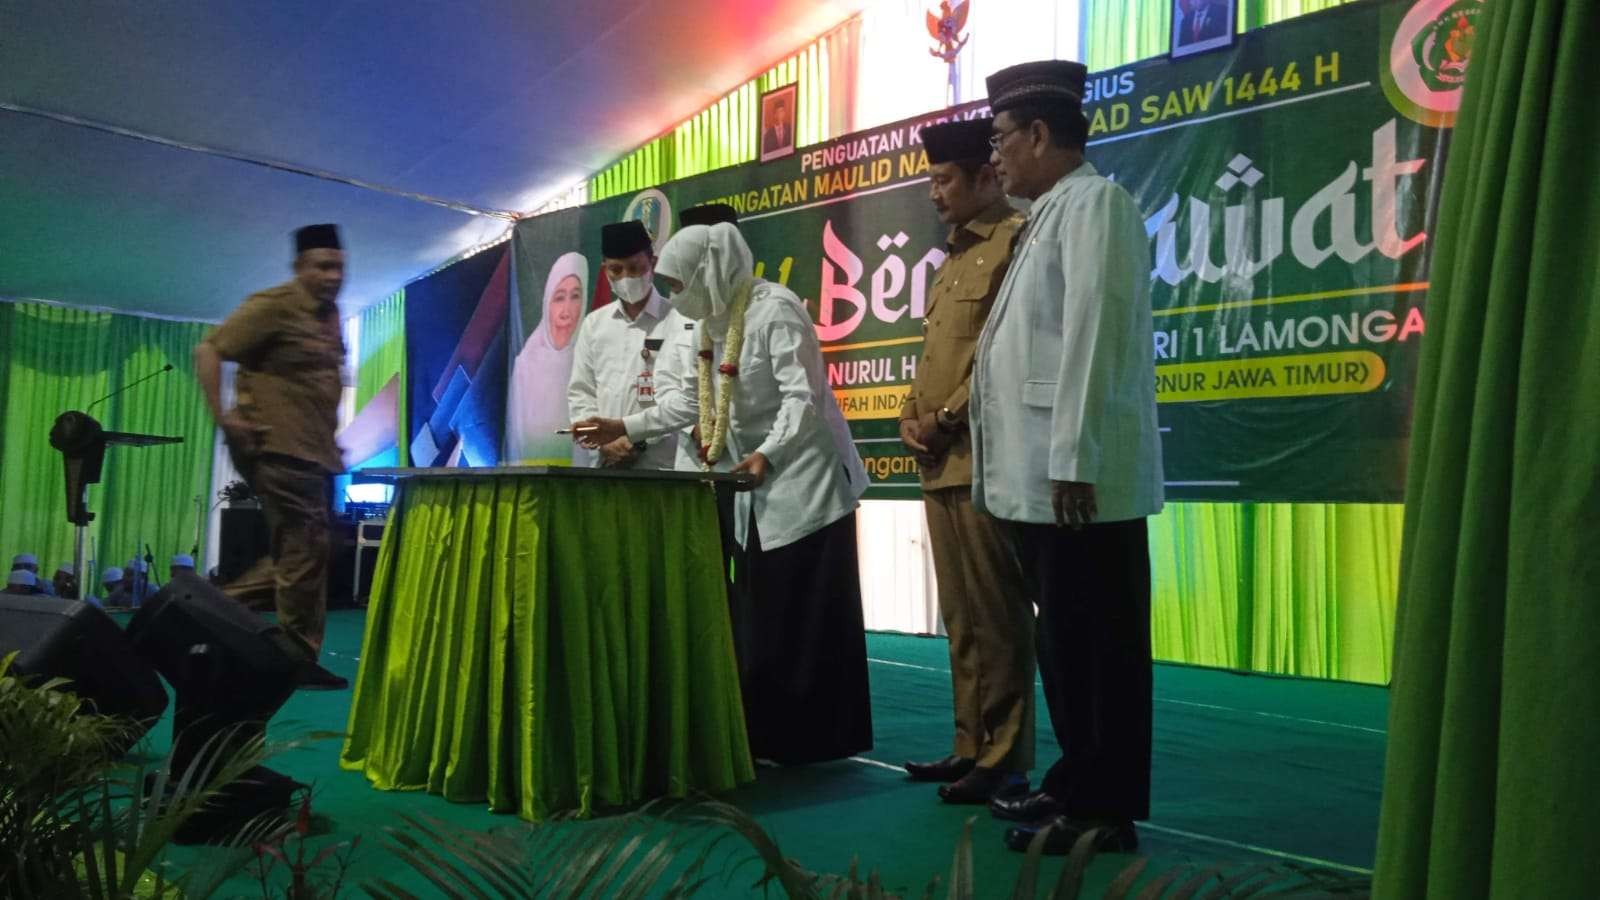 Gubernur Jawa Timur, Khofifah Indar Parawansa saat menandatangani prasasti masjid di SMK Negeri 1 Lamongan (Foto: Imron Rosidi/ngopiibareng.id)